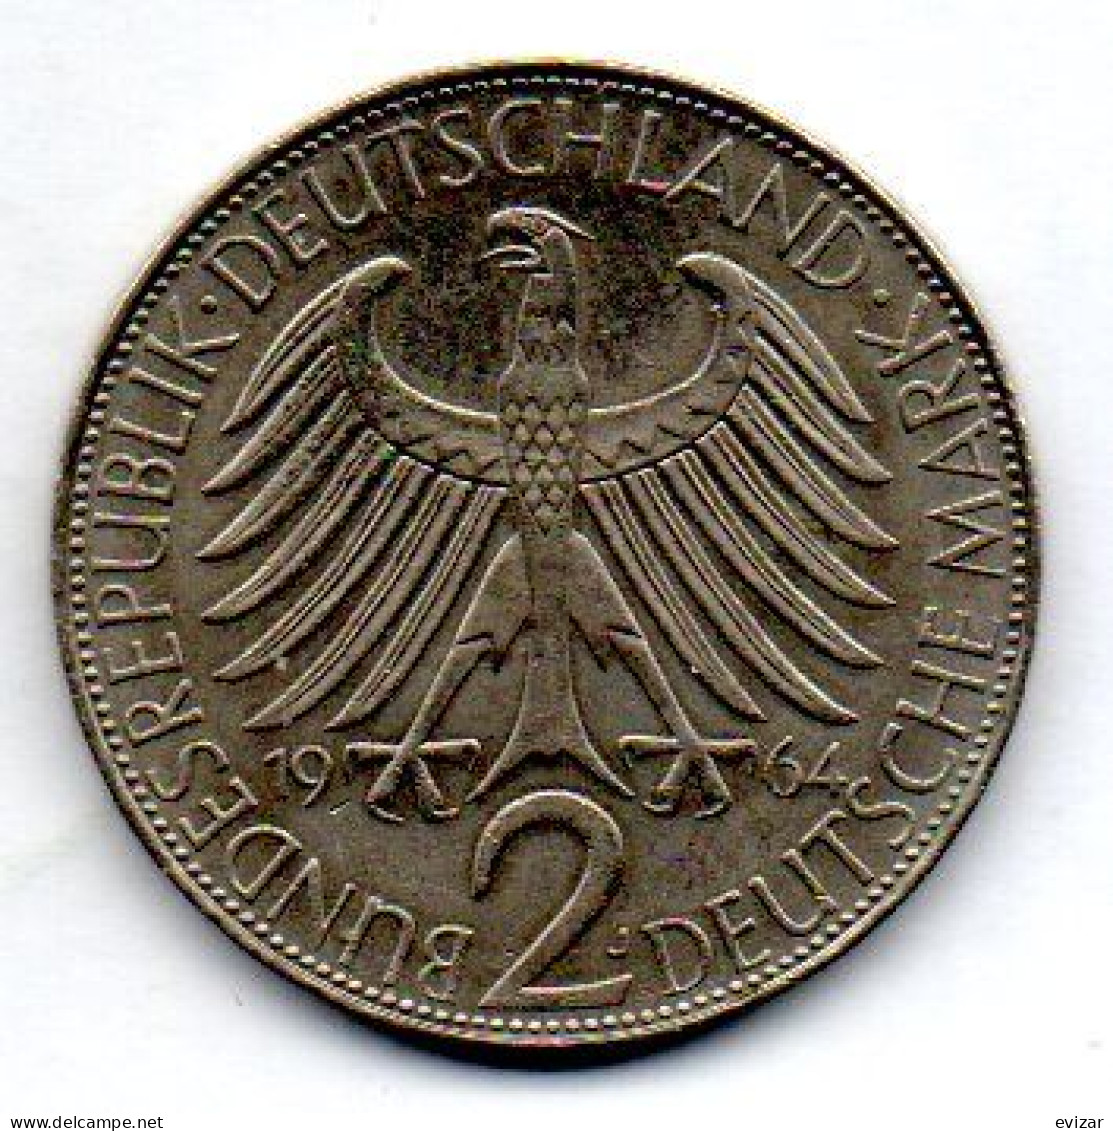 GERMANY - FEDERAL REPUBLIC, 2 Mark, Copper-Nickel, Year 1958-G, KM # 116 - 2 Marchi